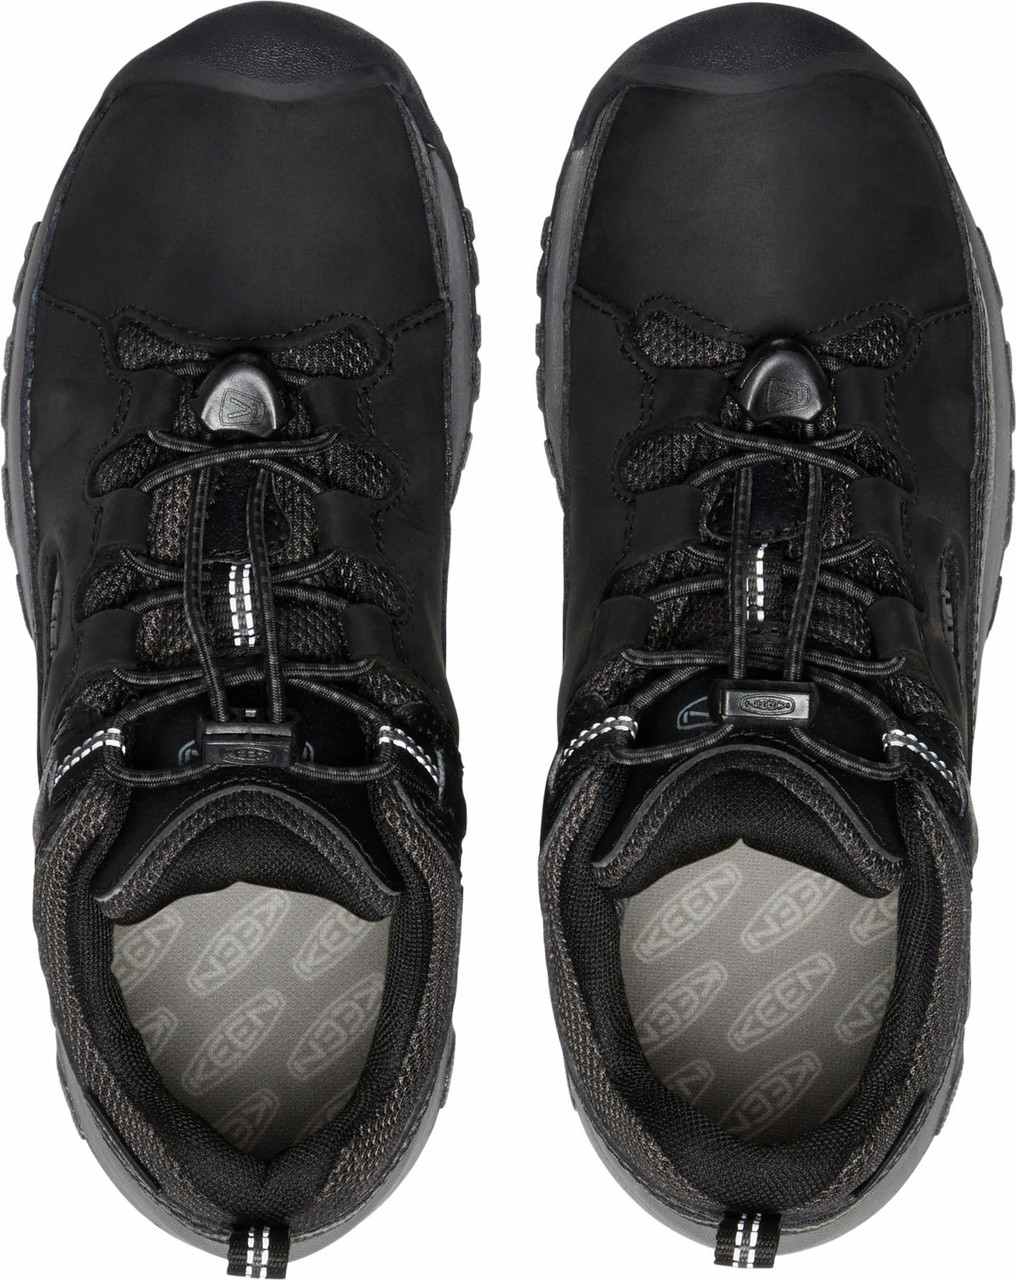 Targhee Low Waterproof Shoes Black/Steel Grey